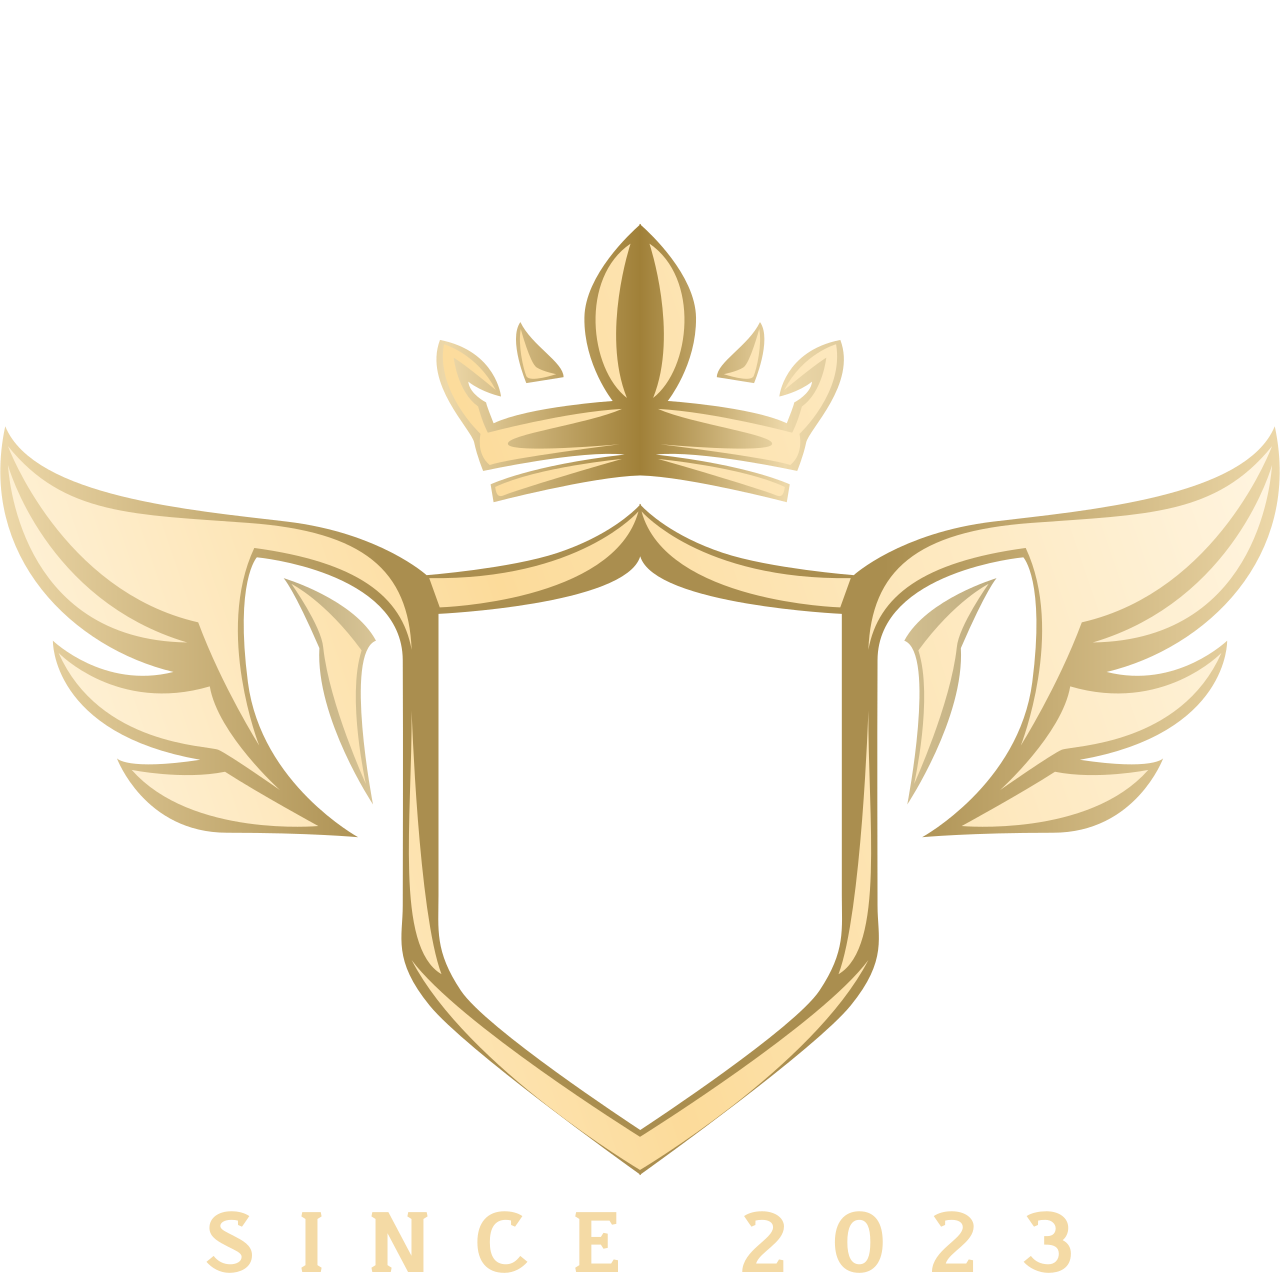 APOLLO NATIONAL GROUP